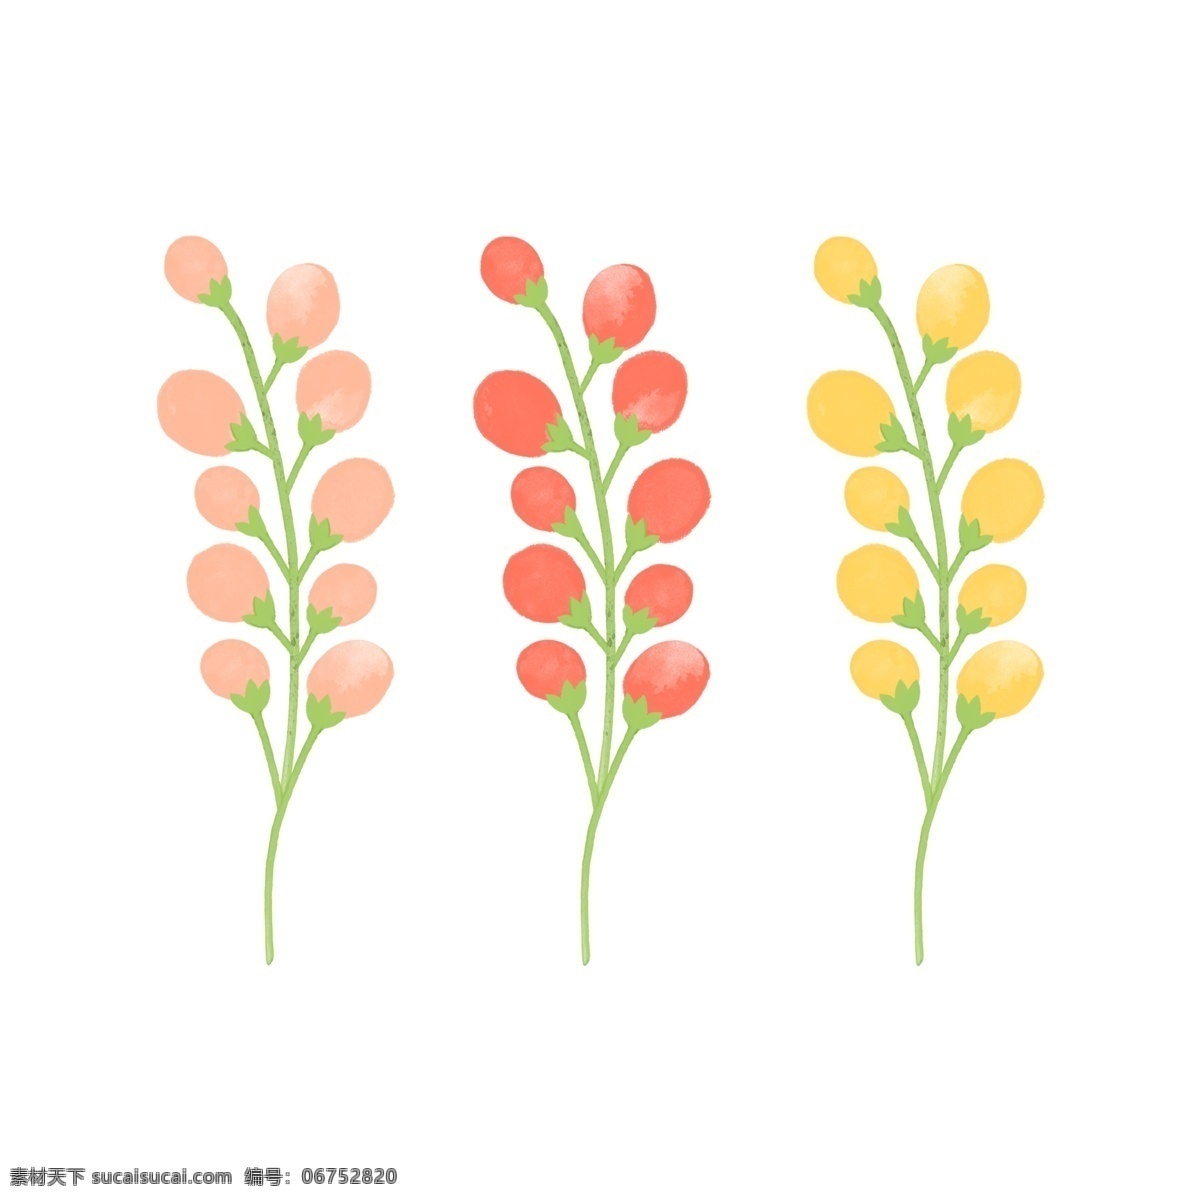 植物 结果 源文件 彩色 成熟 海报设计装饰 设计素材 淘宝素材 装饰